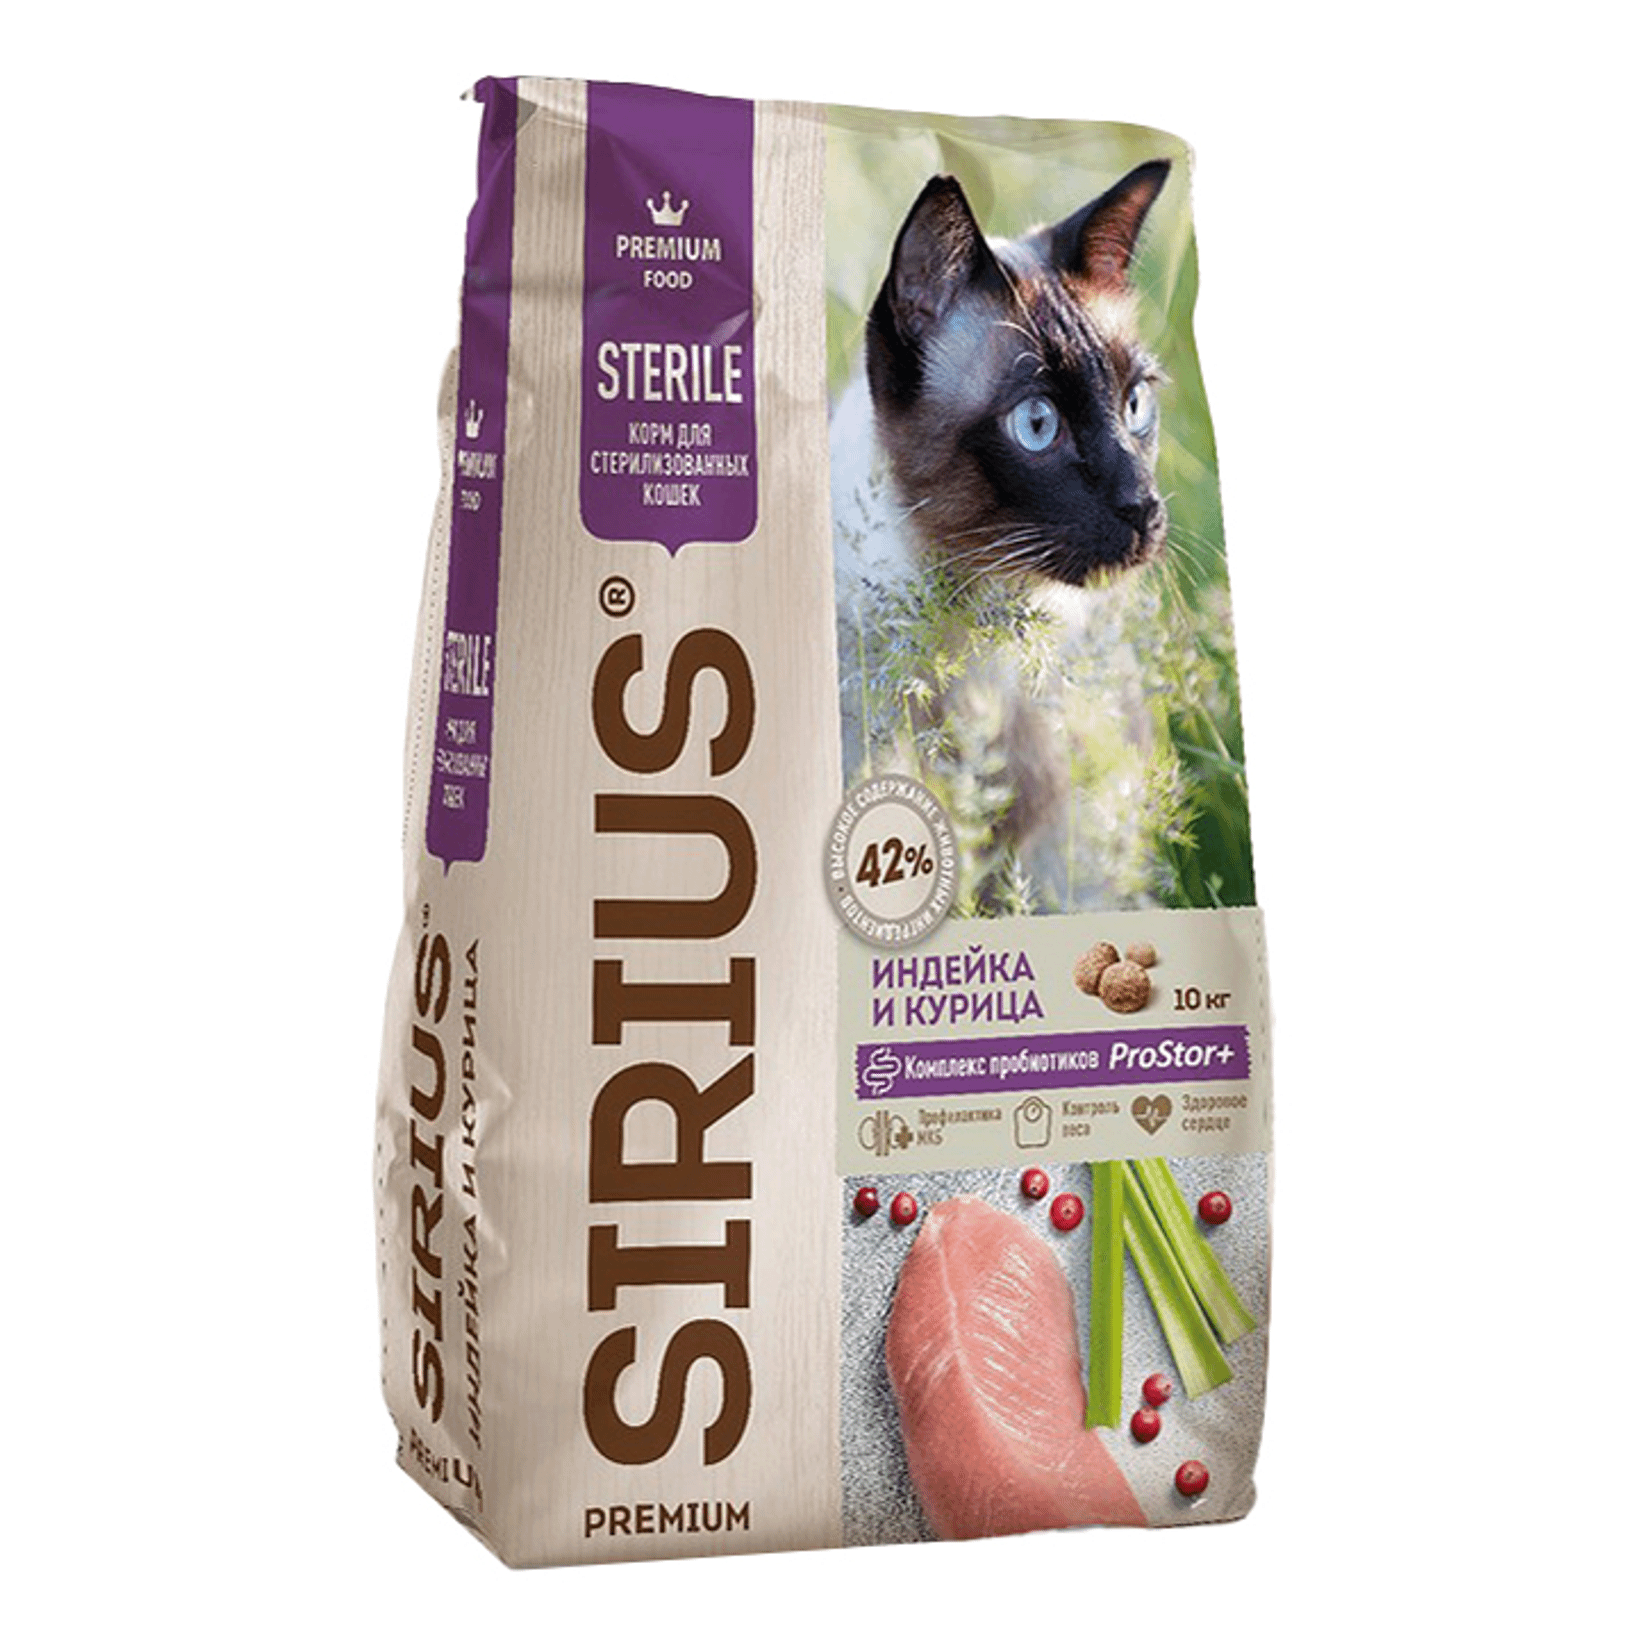 Сухой корм для кошек Sirius, для стерилизованных, индейка и курица, 10 кг